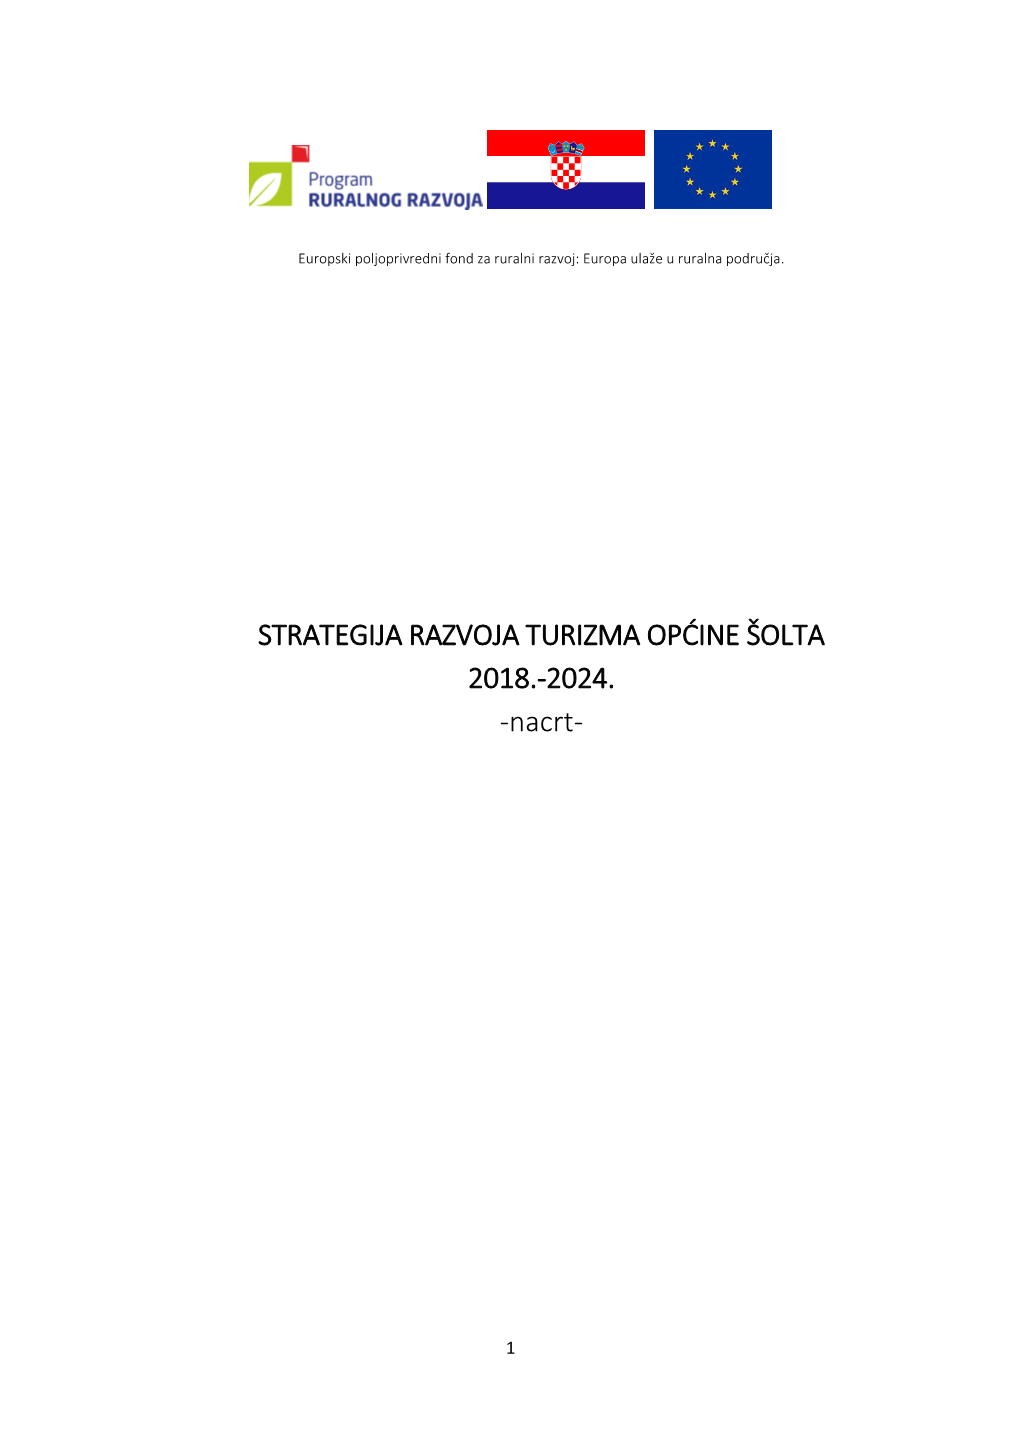 Strategija Razvoja Turizma Općine Šolta 2018.-2024